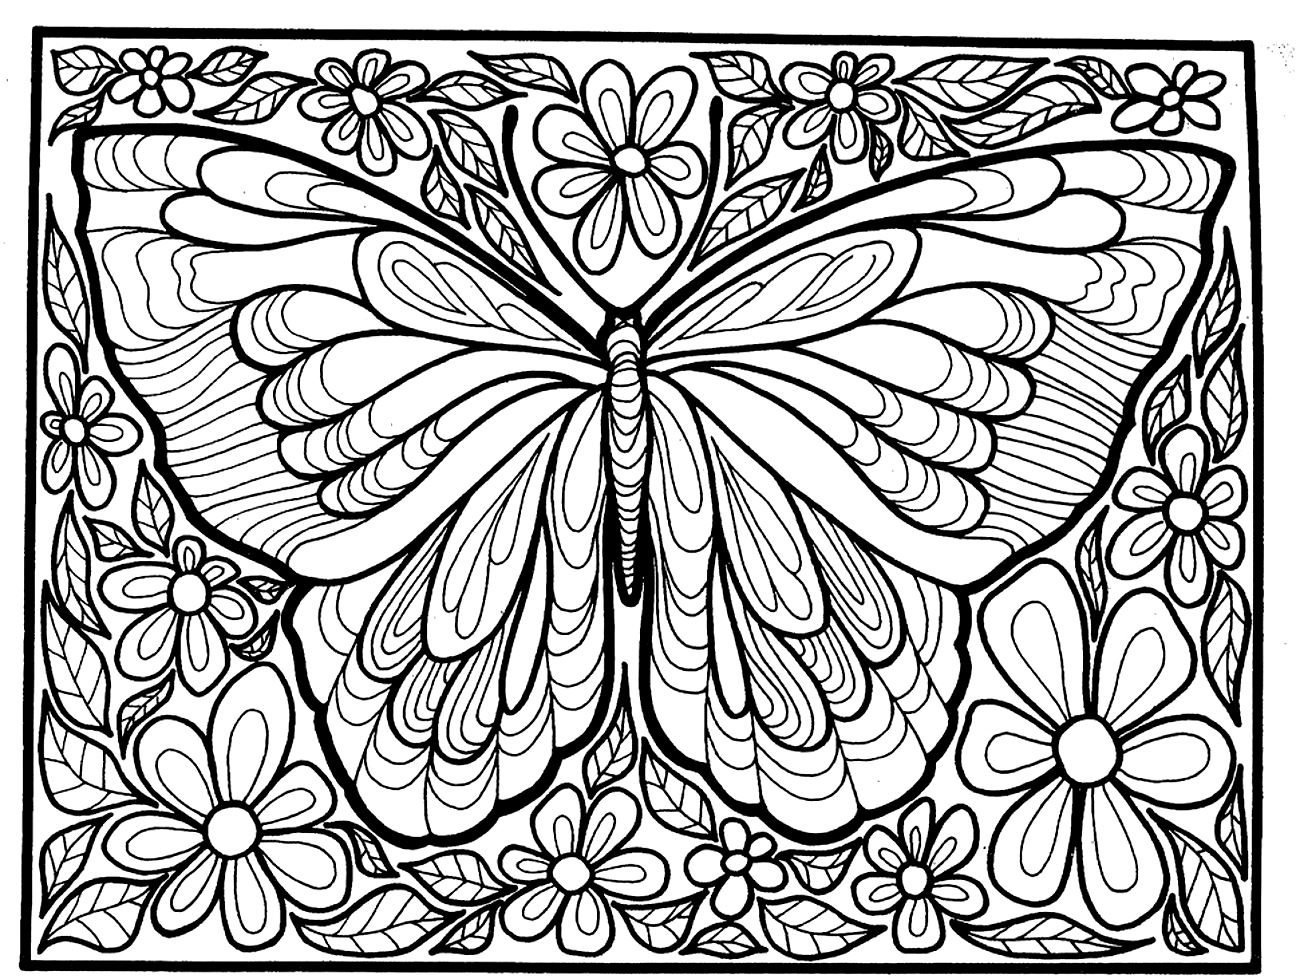 Komplexe Malvorlage für Erwachsene eines Schmetterlings mit vielen Details